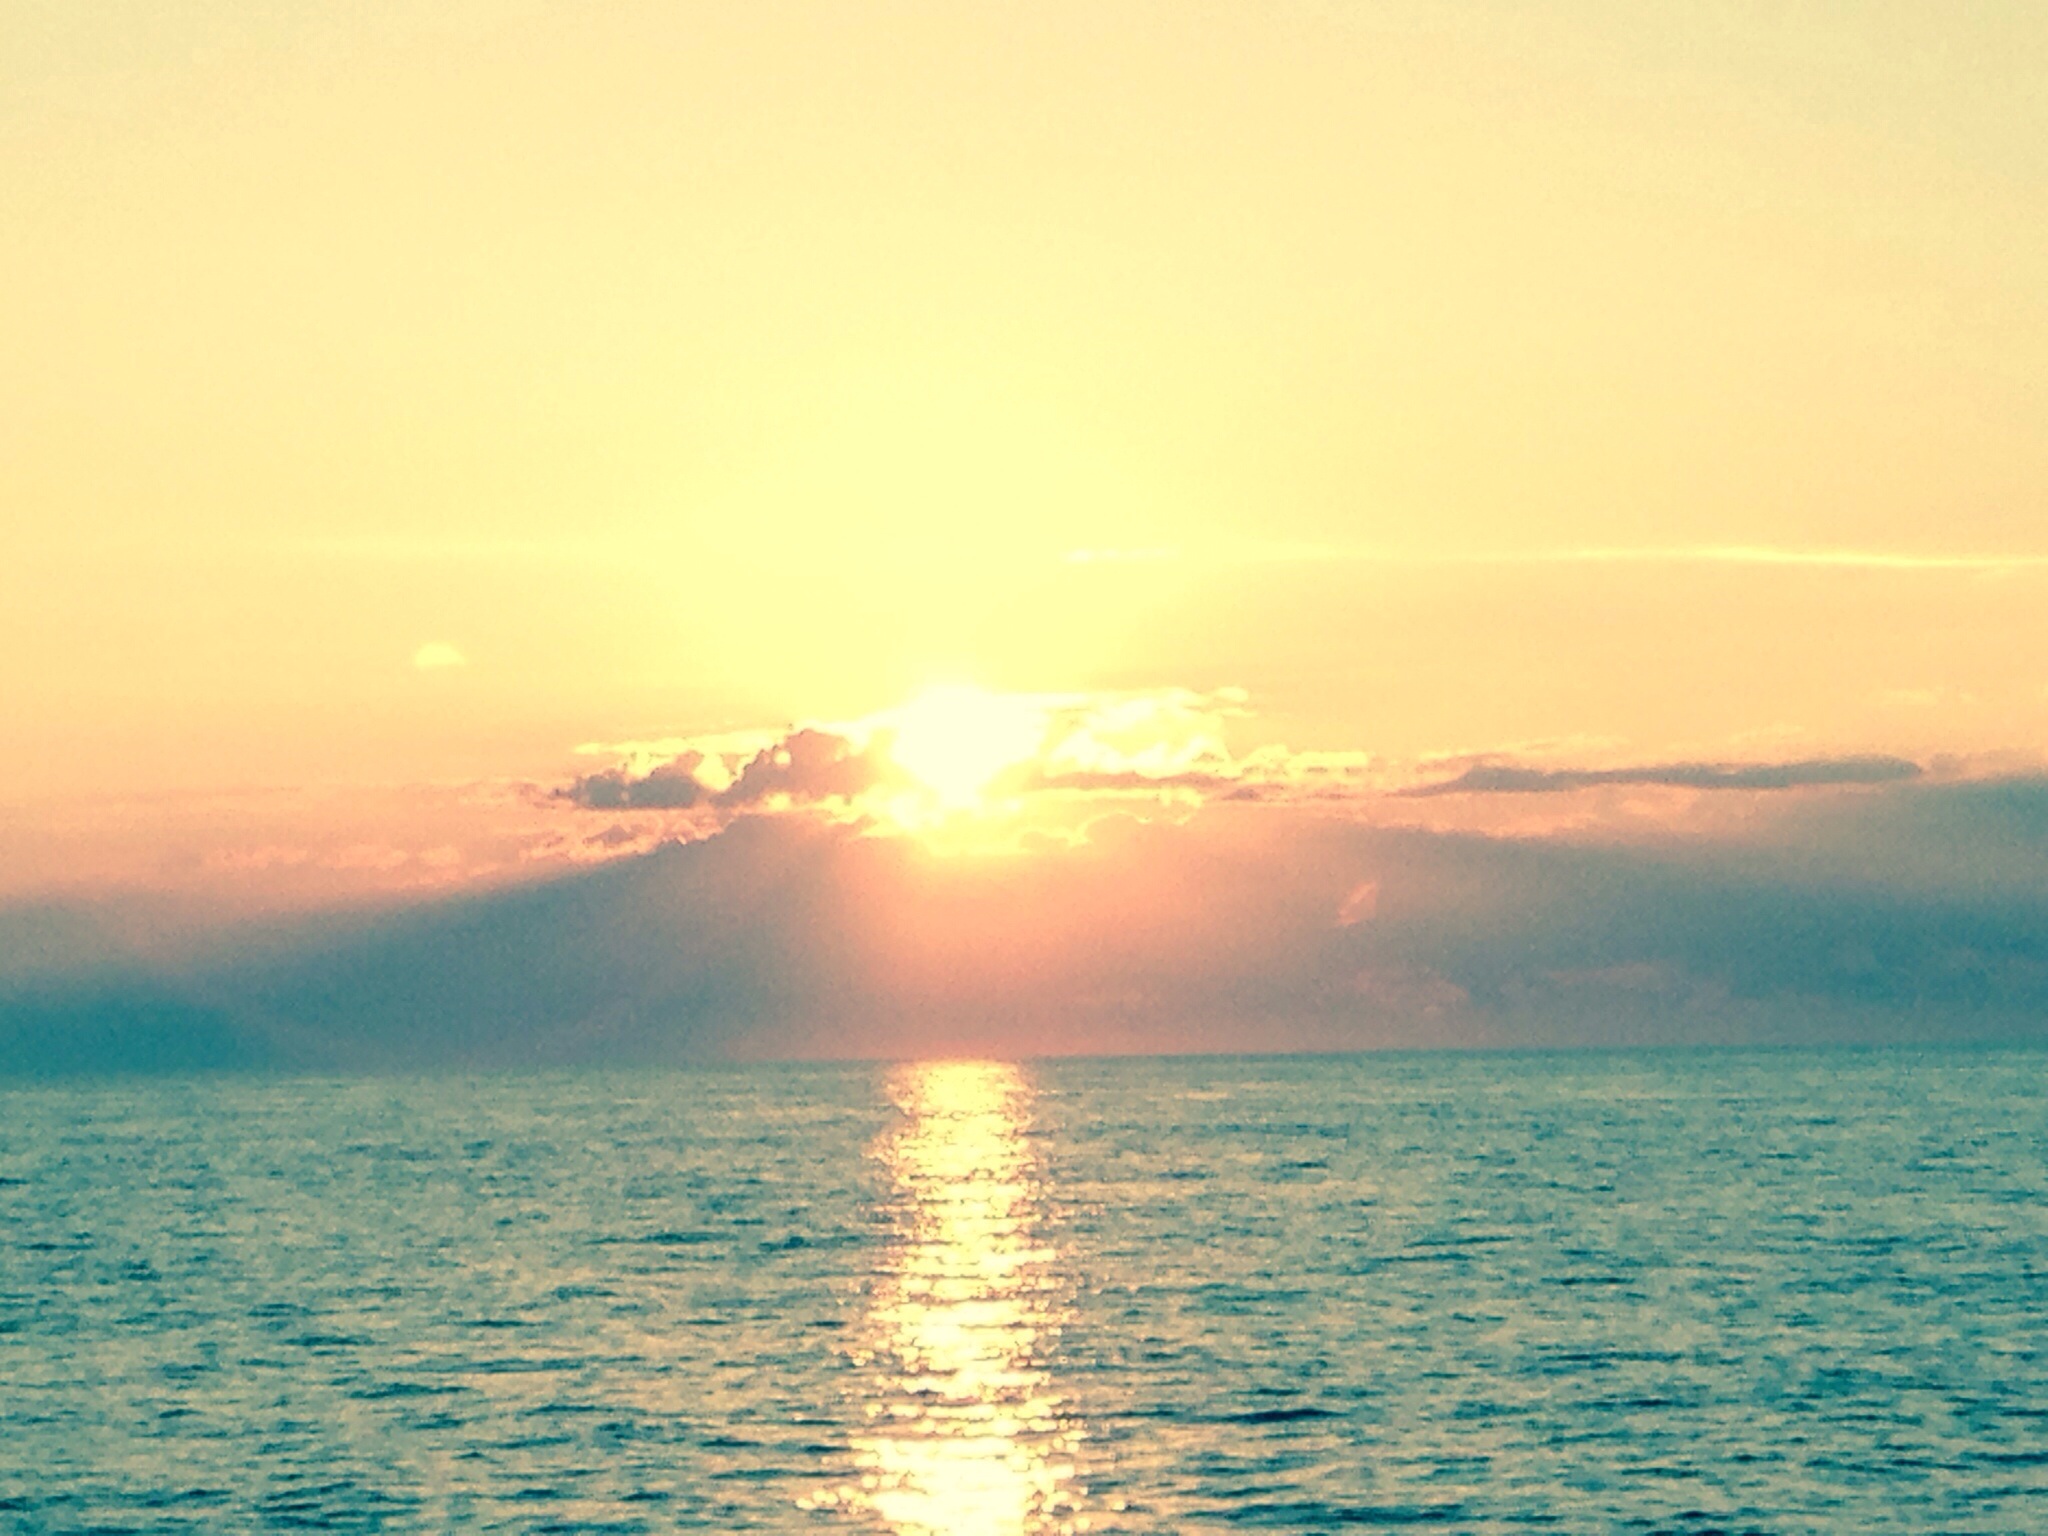 A spectacular sea sunrise | eyehearttravel